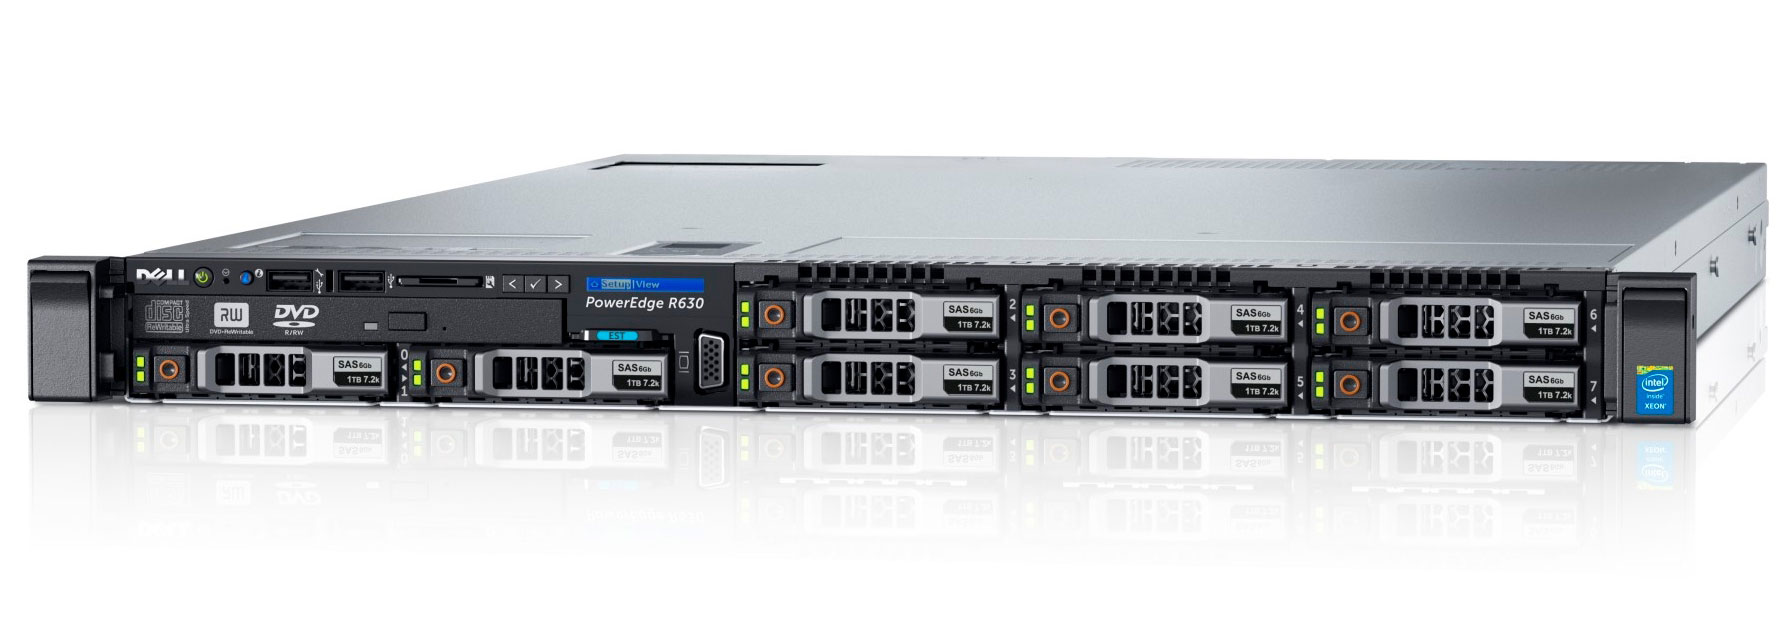 Подробное фото Сервер DELL PowerEdge R630 2*Xeon E5-2650v4 256Gb 2133P DDR4 8x noHDD 2.5", SAS RAID Perc H730, 1024Mb, DVD, 2*PSU